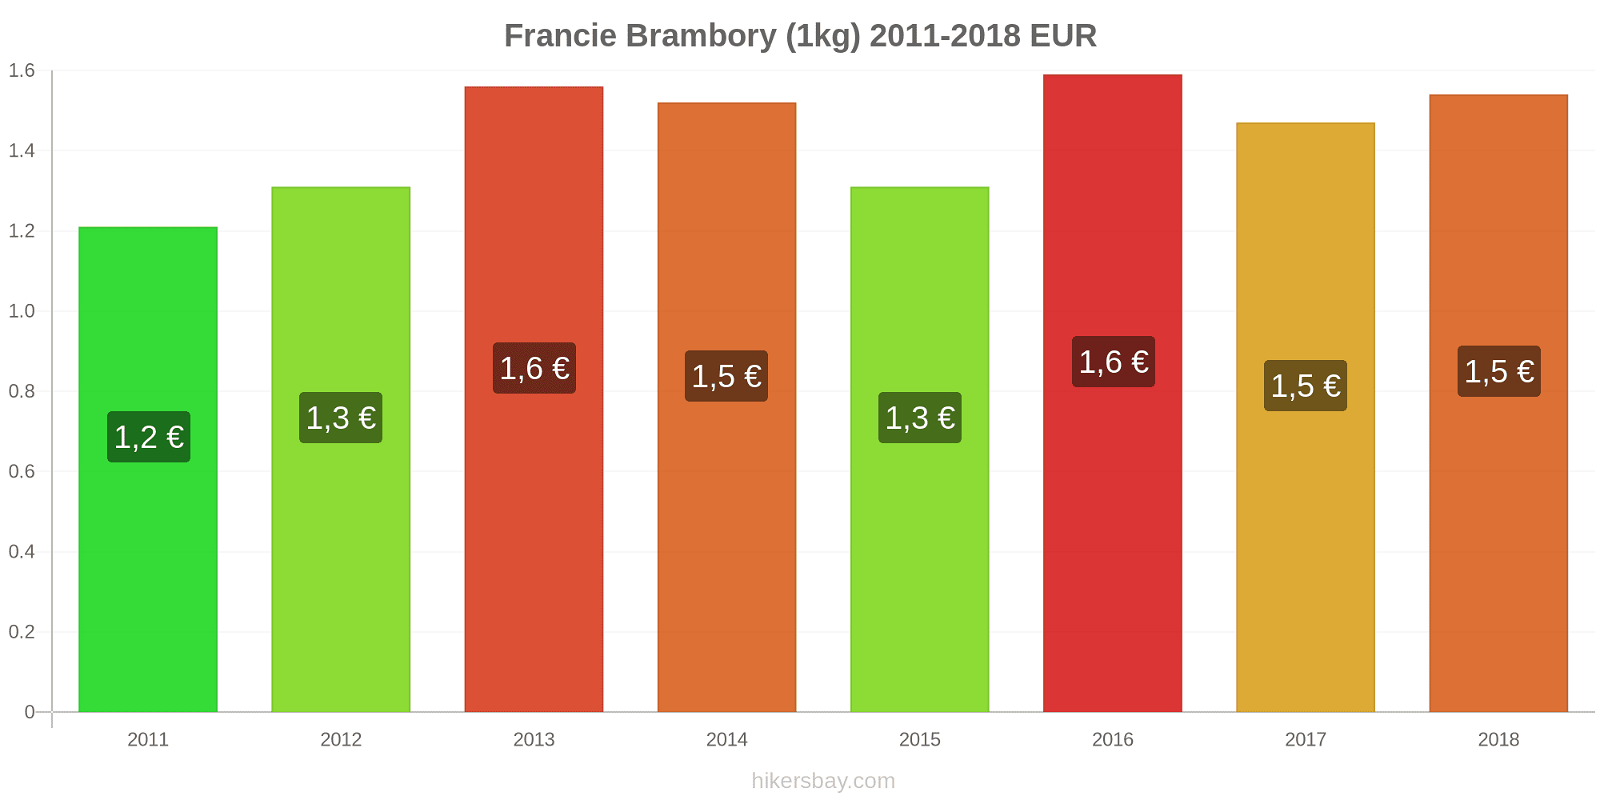 Francie změny cen Brambory (1kg) hikersbay.com